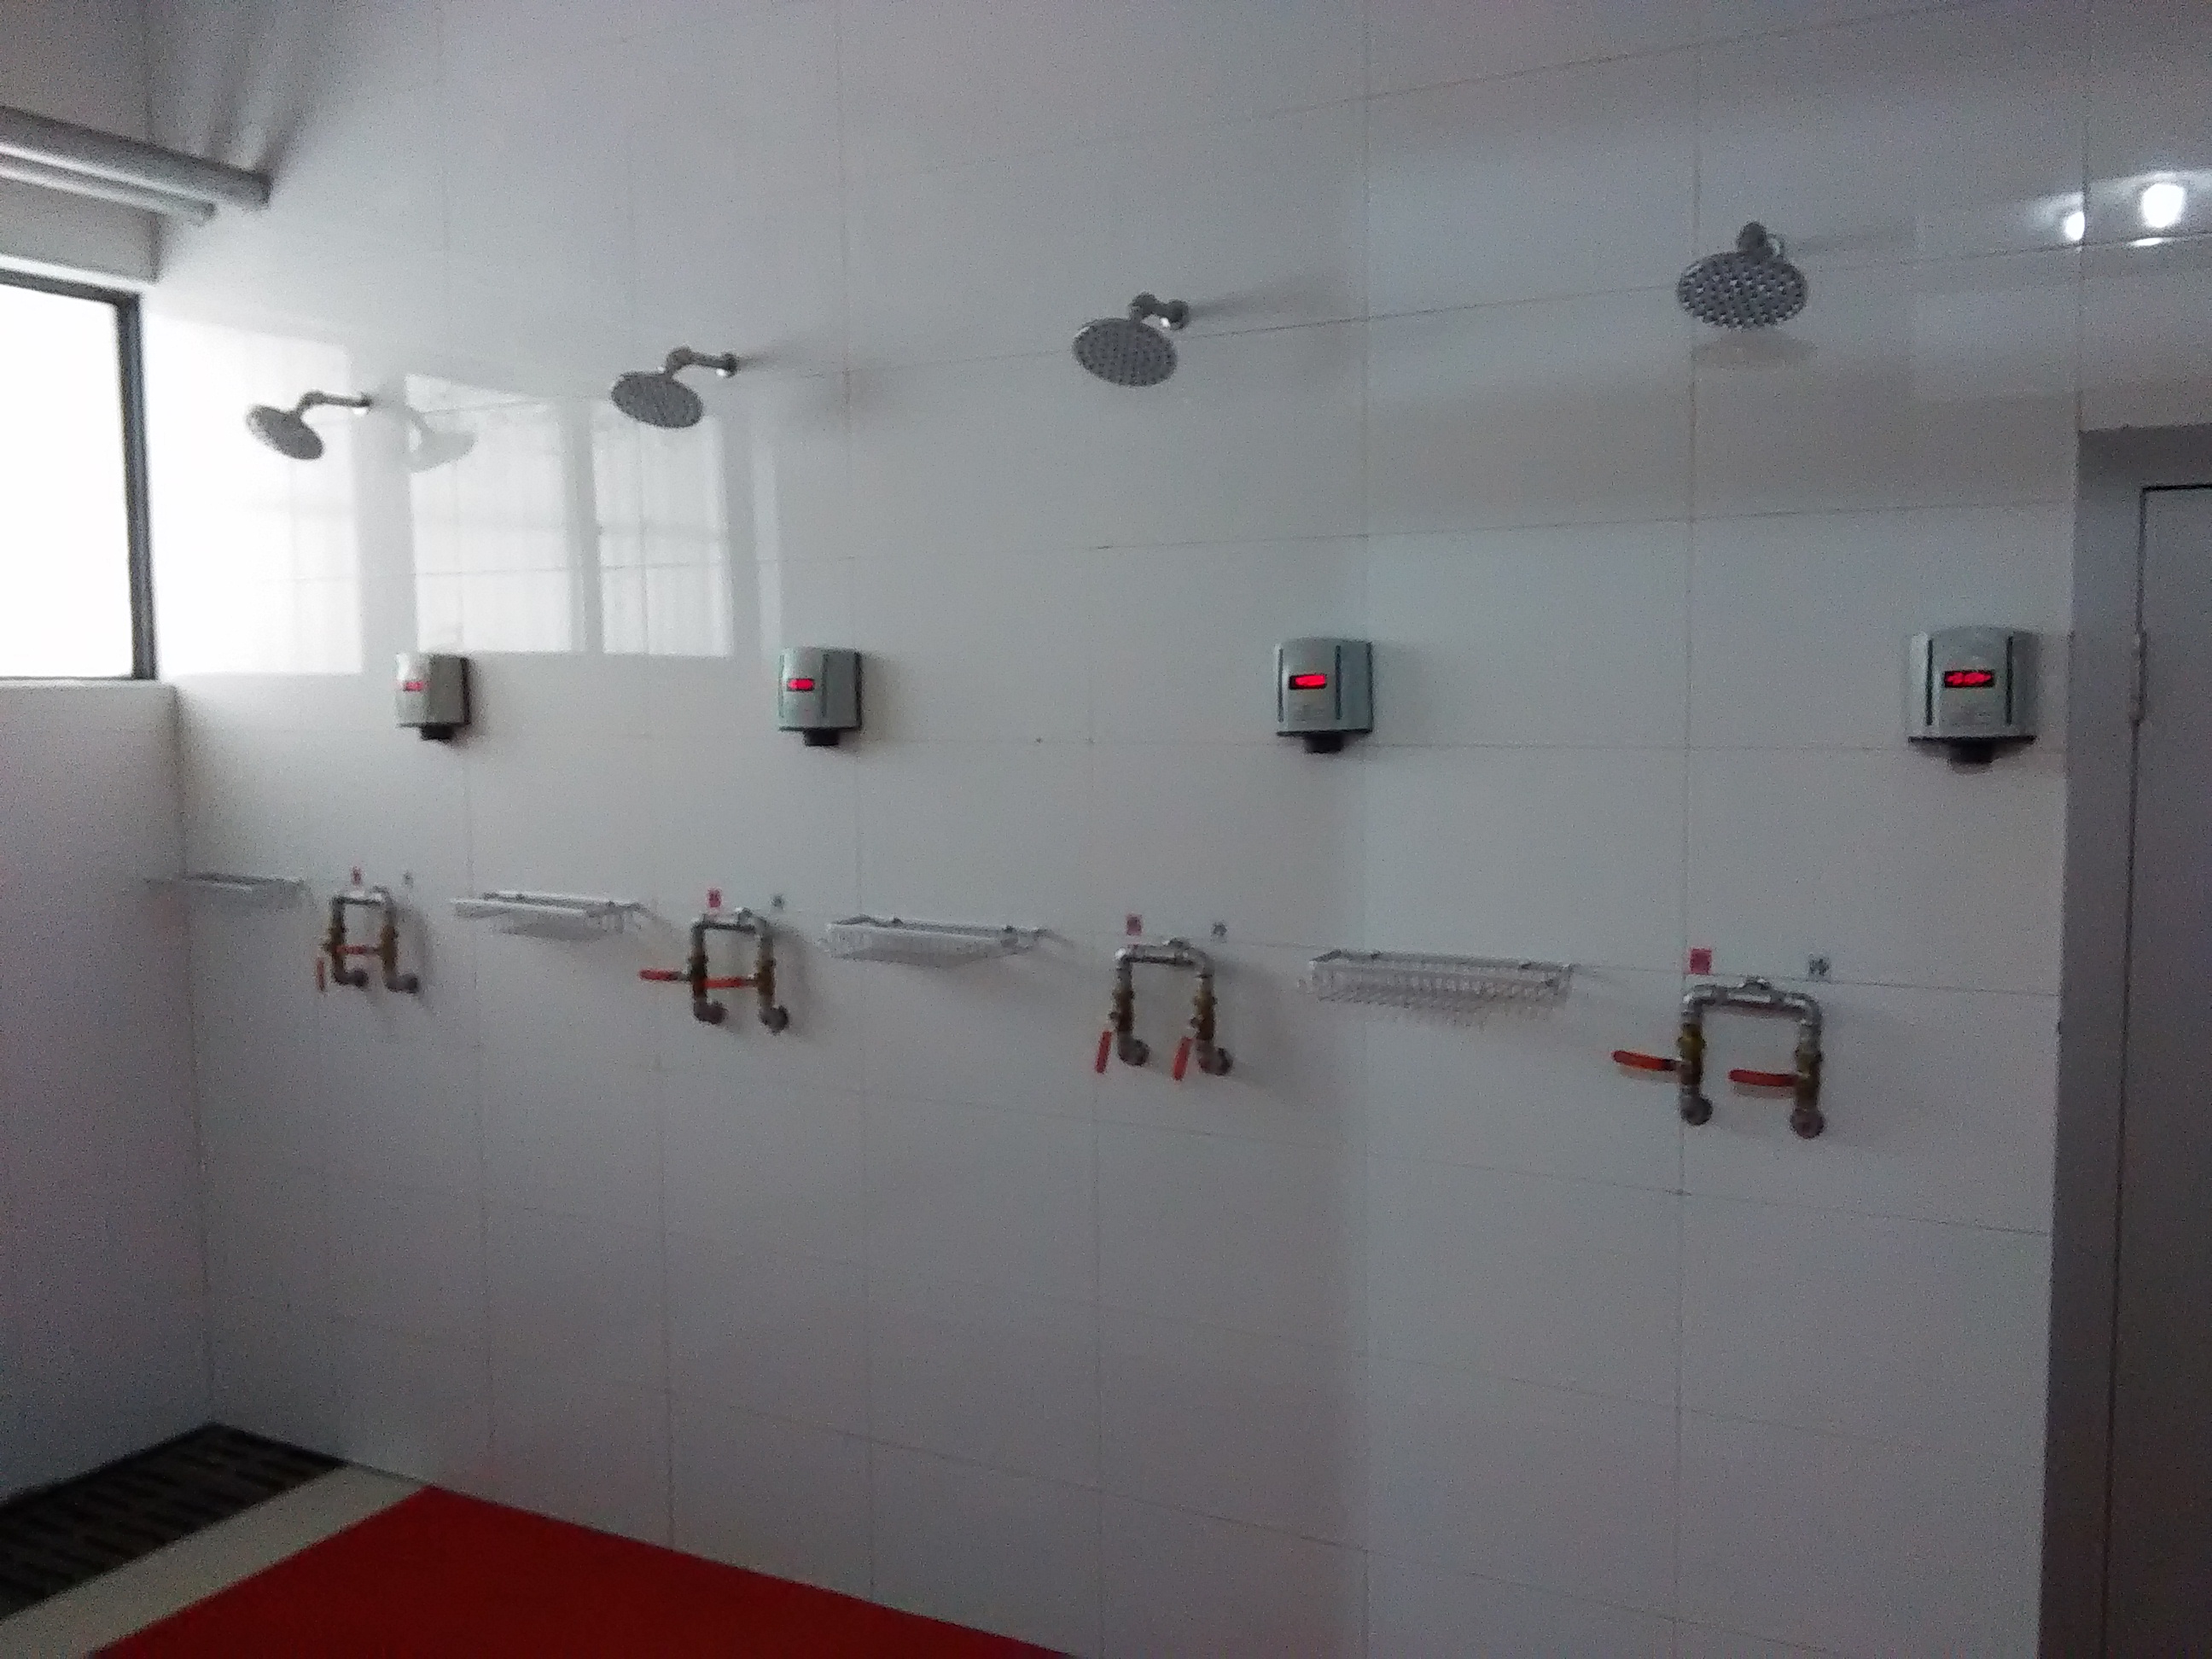 校区新建学生公寓淋浴室正式投入使用-山东科技大学泰安校区